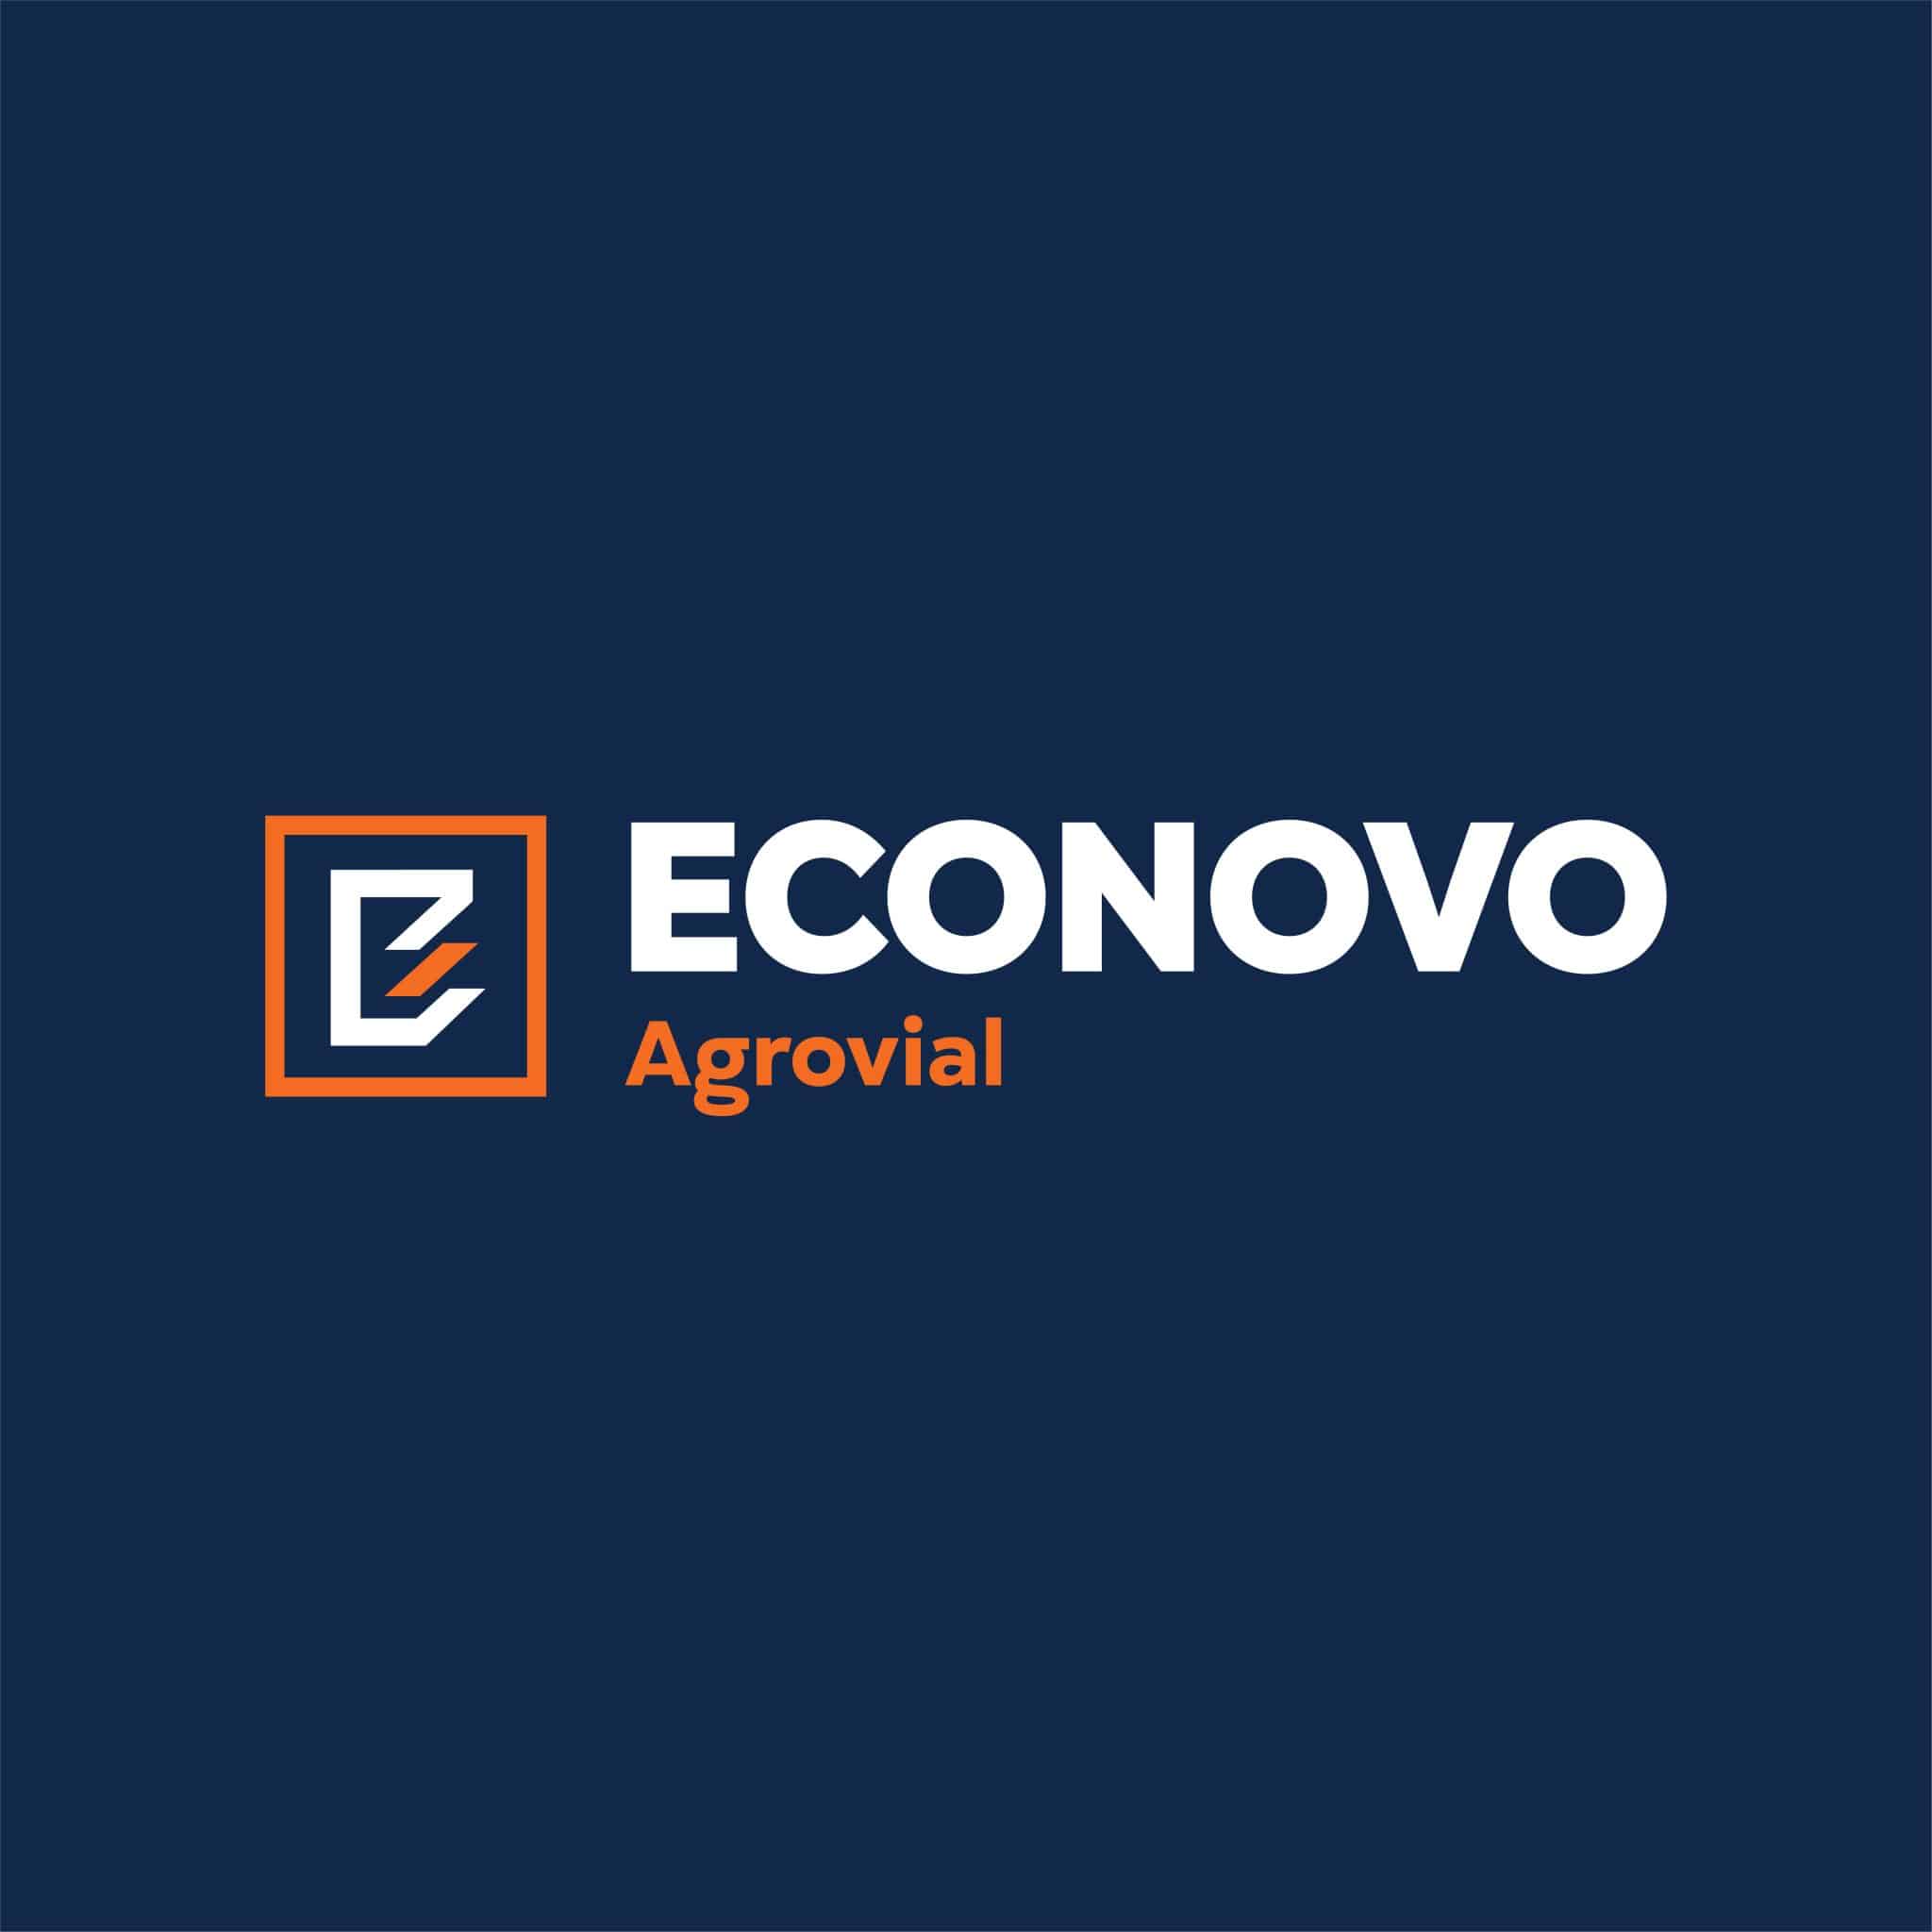 (c) Econovoagrovial.com.ar